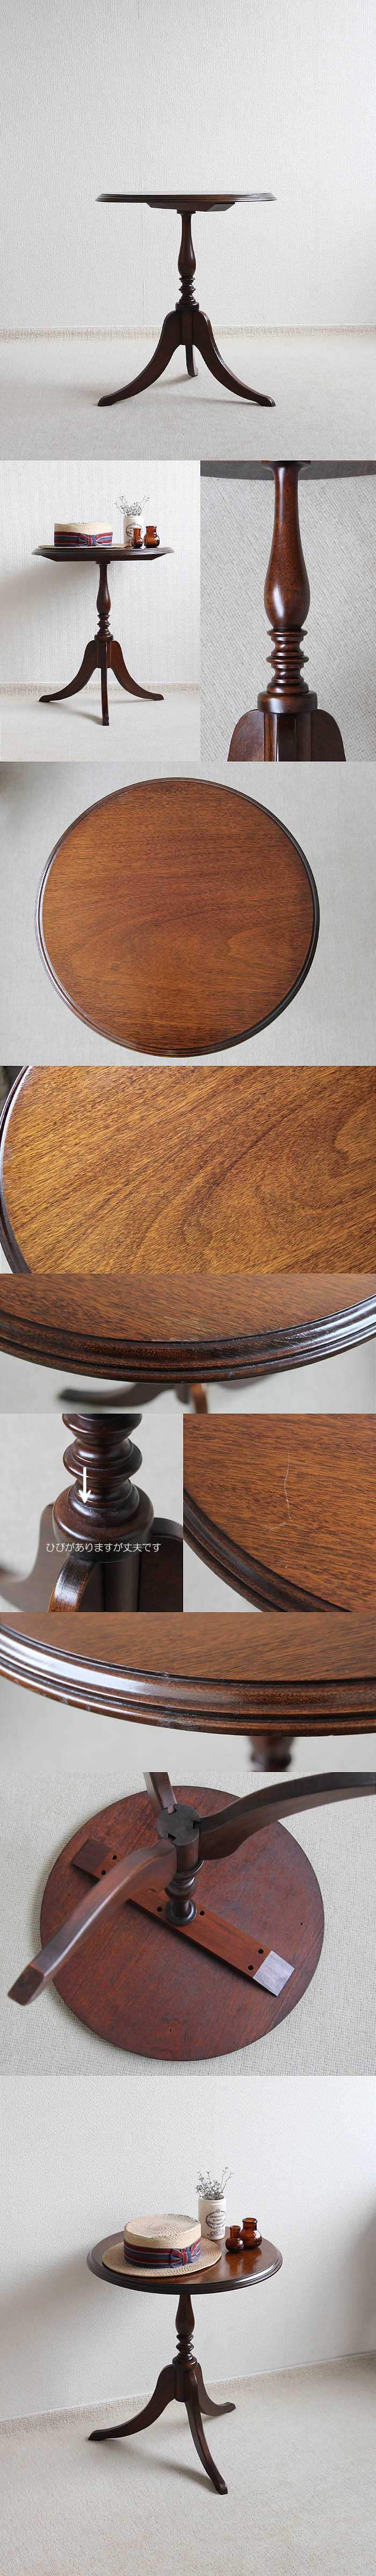 イギリス アンティーク調 ワインテーブル マホガニー 木製テーブル 花台 家具「飾り台にも」P-035